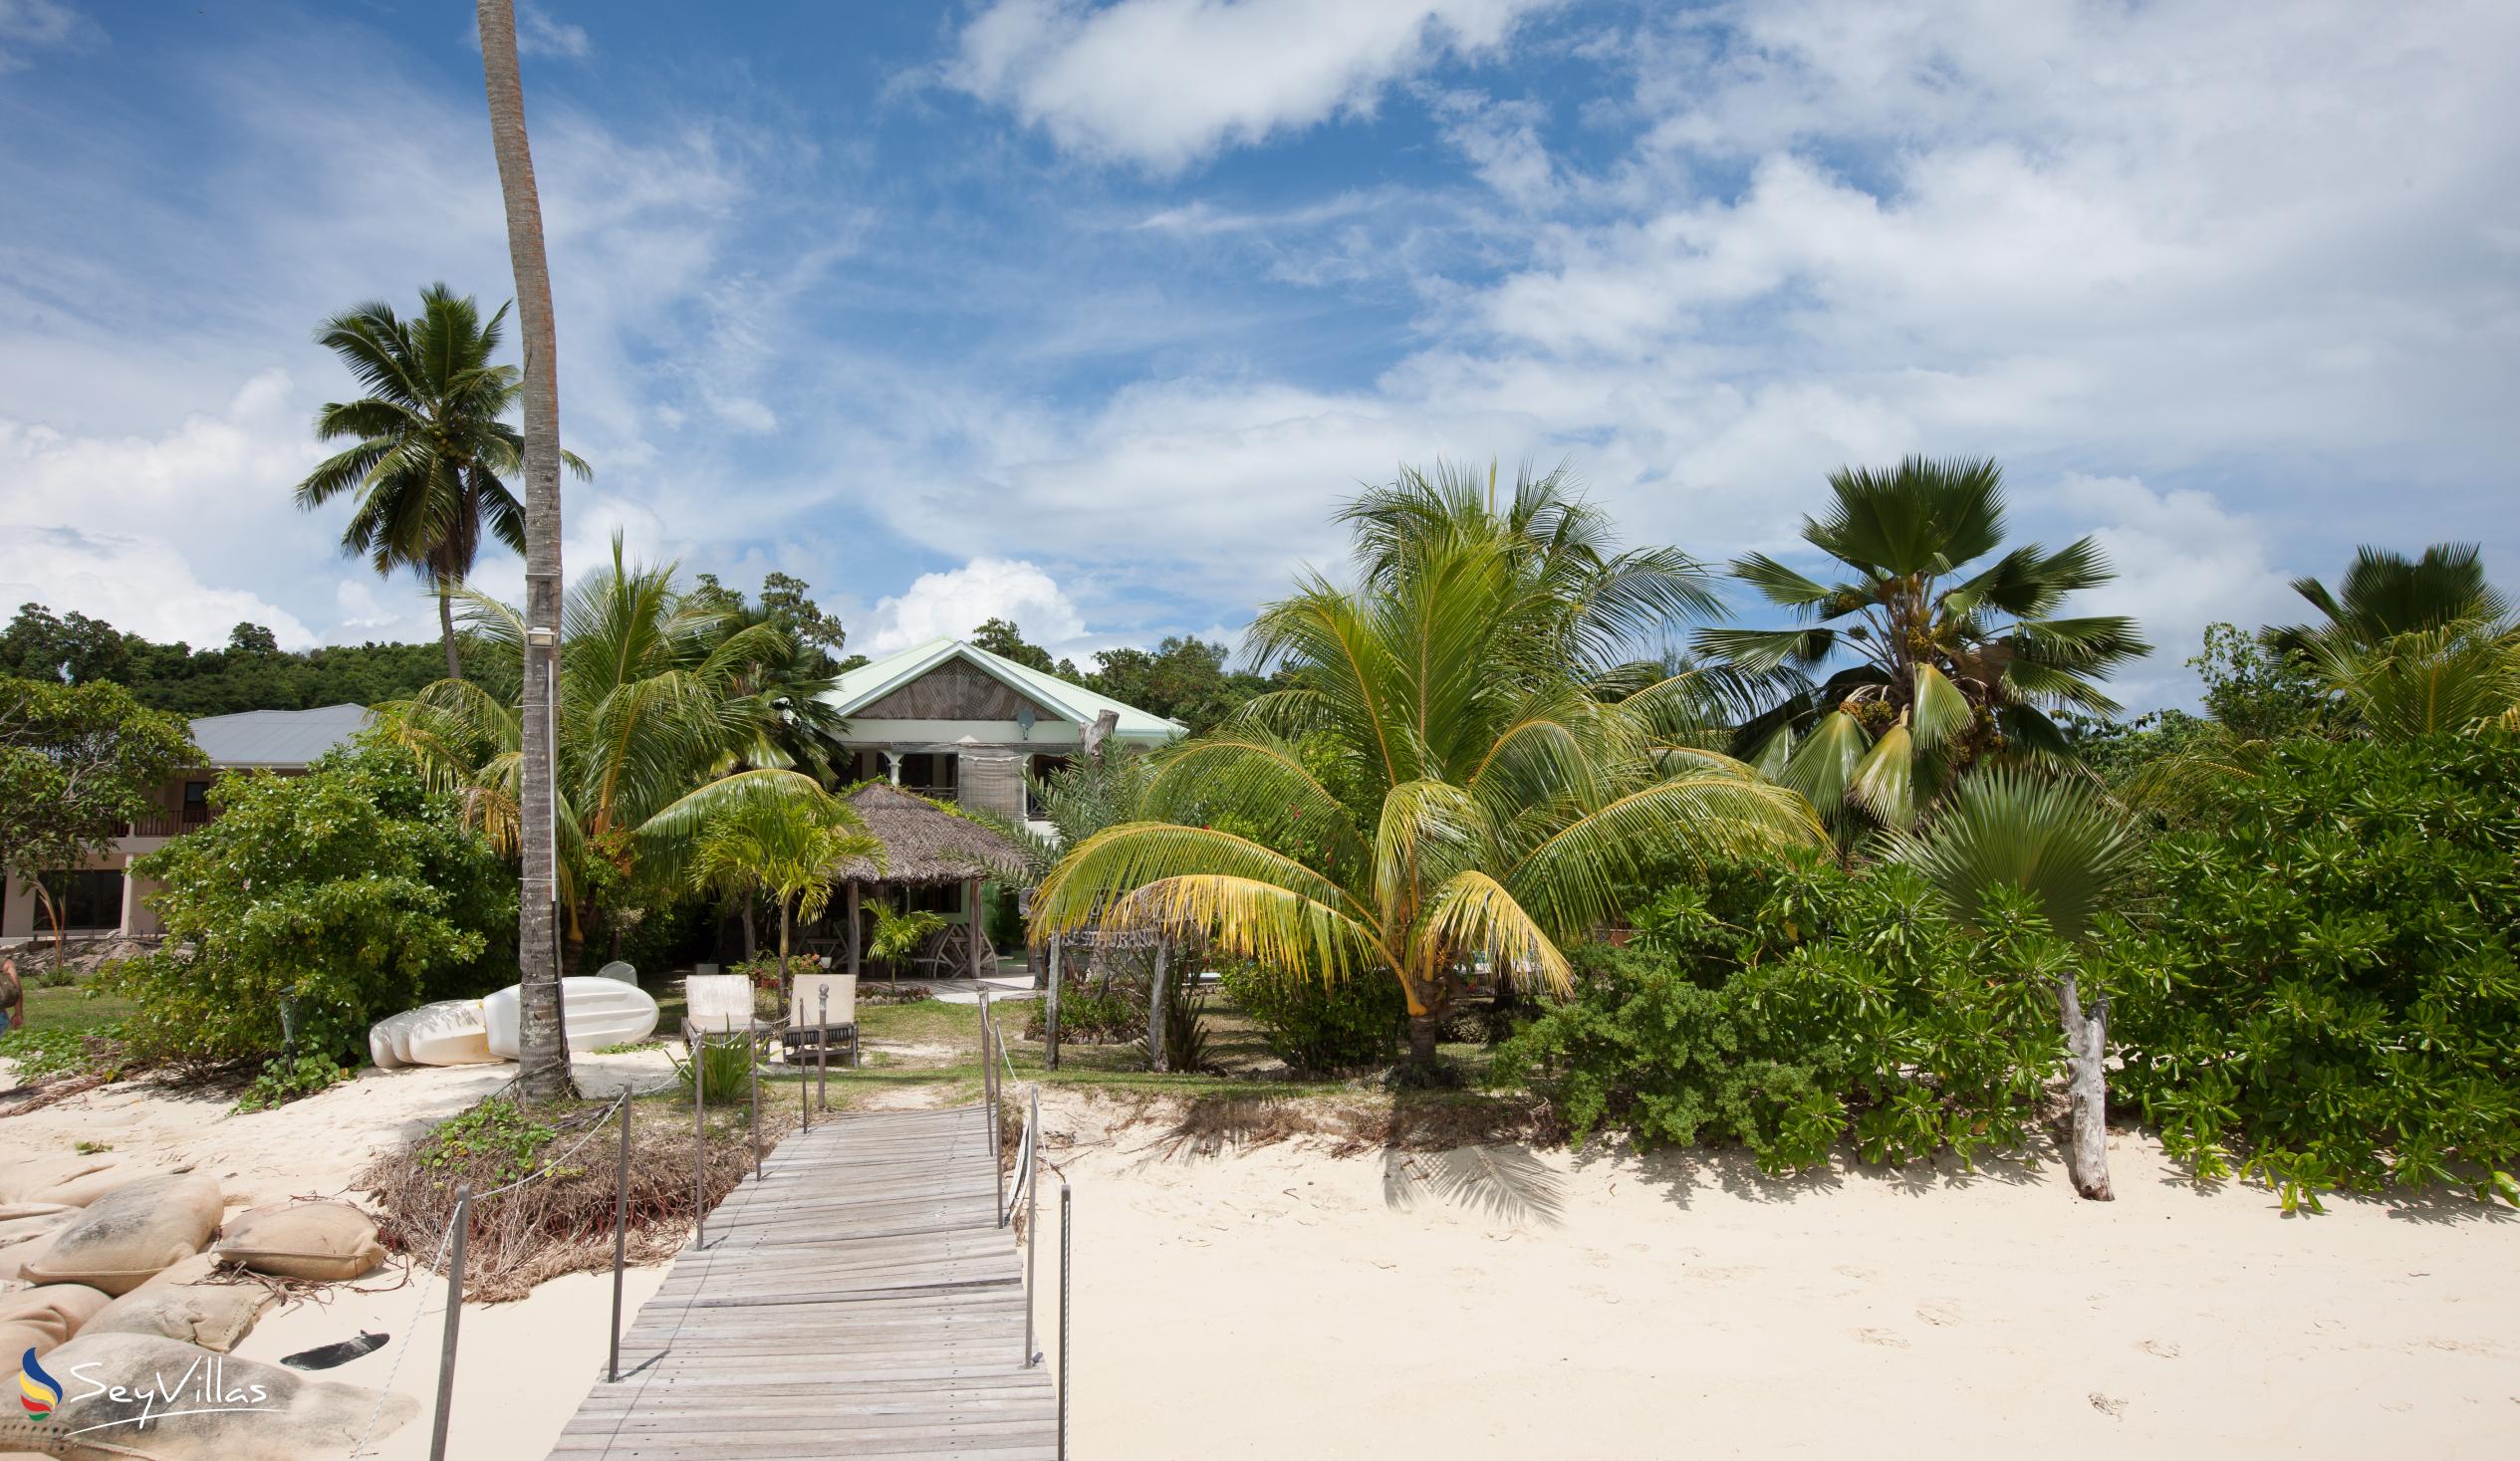 Foto 47: Villa de Cerf - Aussenbereich - Cerf Island (Seychellen)